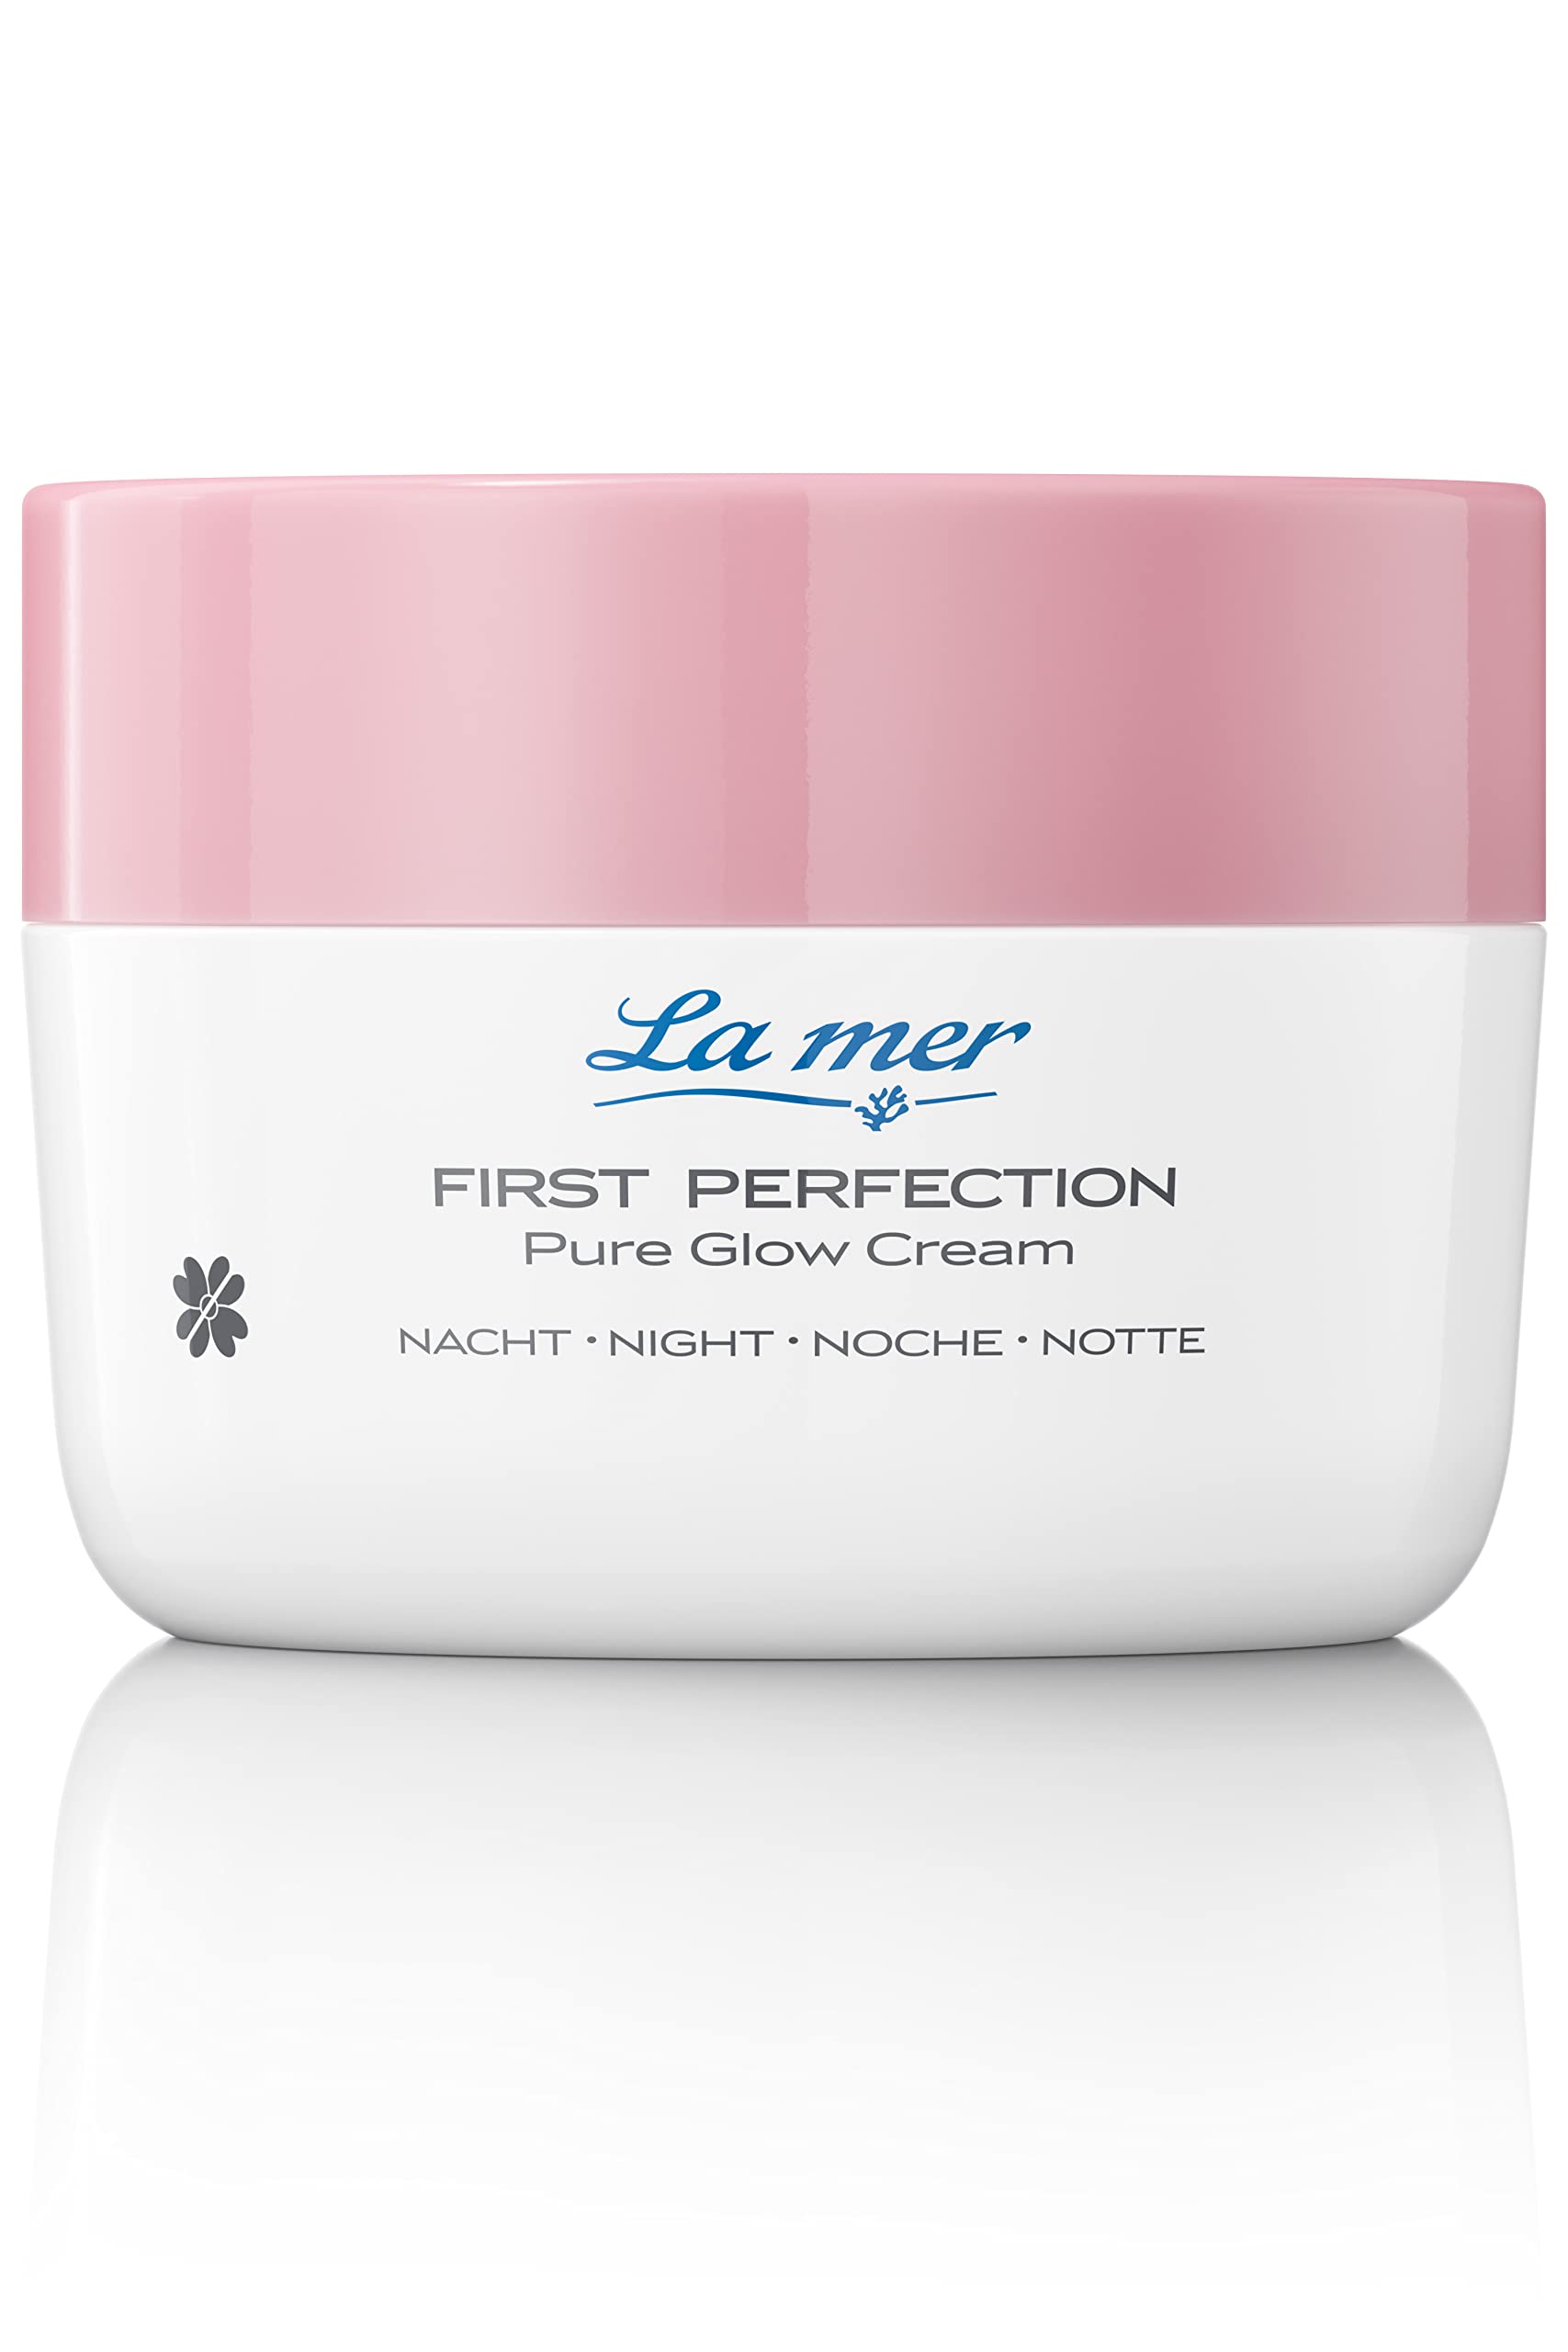 La mer First Perfection Pure Glow Cream Nacht - Regenerierende Nachtcreme - Anti Aging Wirkung - Feuchtigkeitsspendend und beruhigend - Für ein jugendliches Hautbild - 50 ml